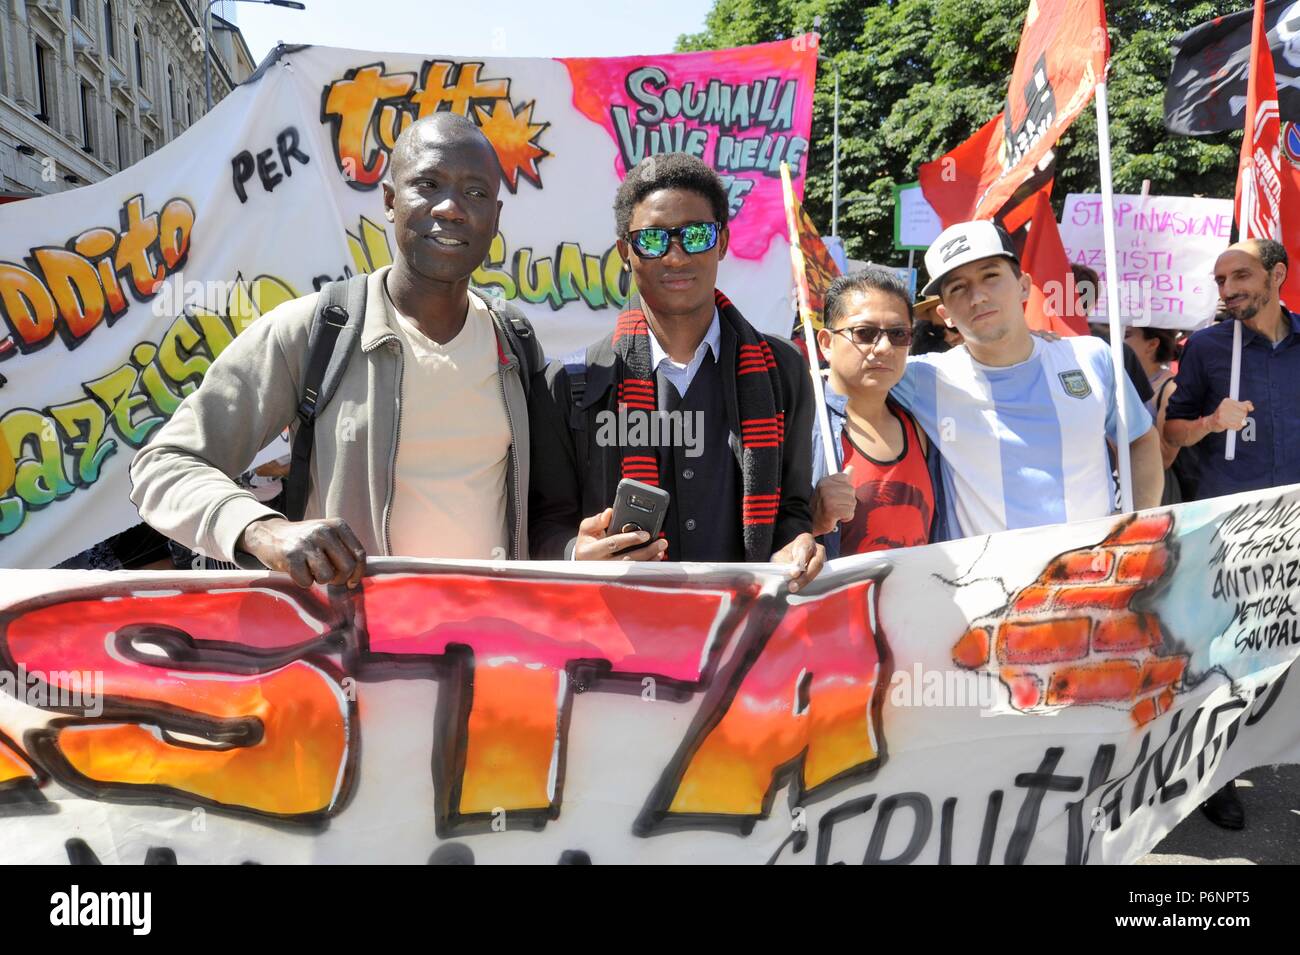 Milan, le 9 juin 2018, manifestation de protestation par les migrants pour le meurtre dans la plaine de Gioia Tauro, en Calabre, de Soumaila Sacko, immigrants africains du Mali, ouvrier agricole et syndicaliste de l'union indépendante CLÉ USB Banque D'Images